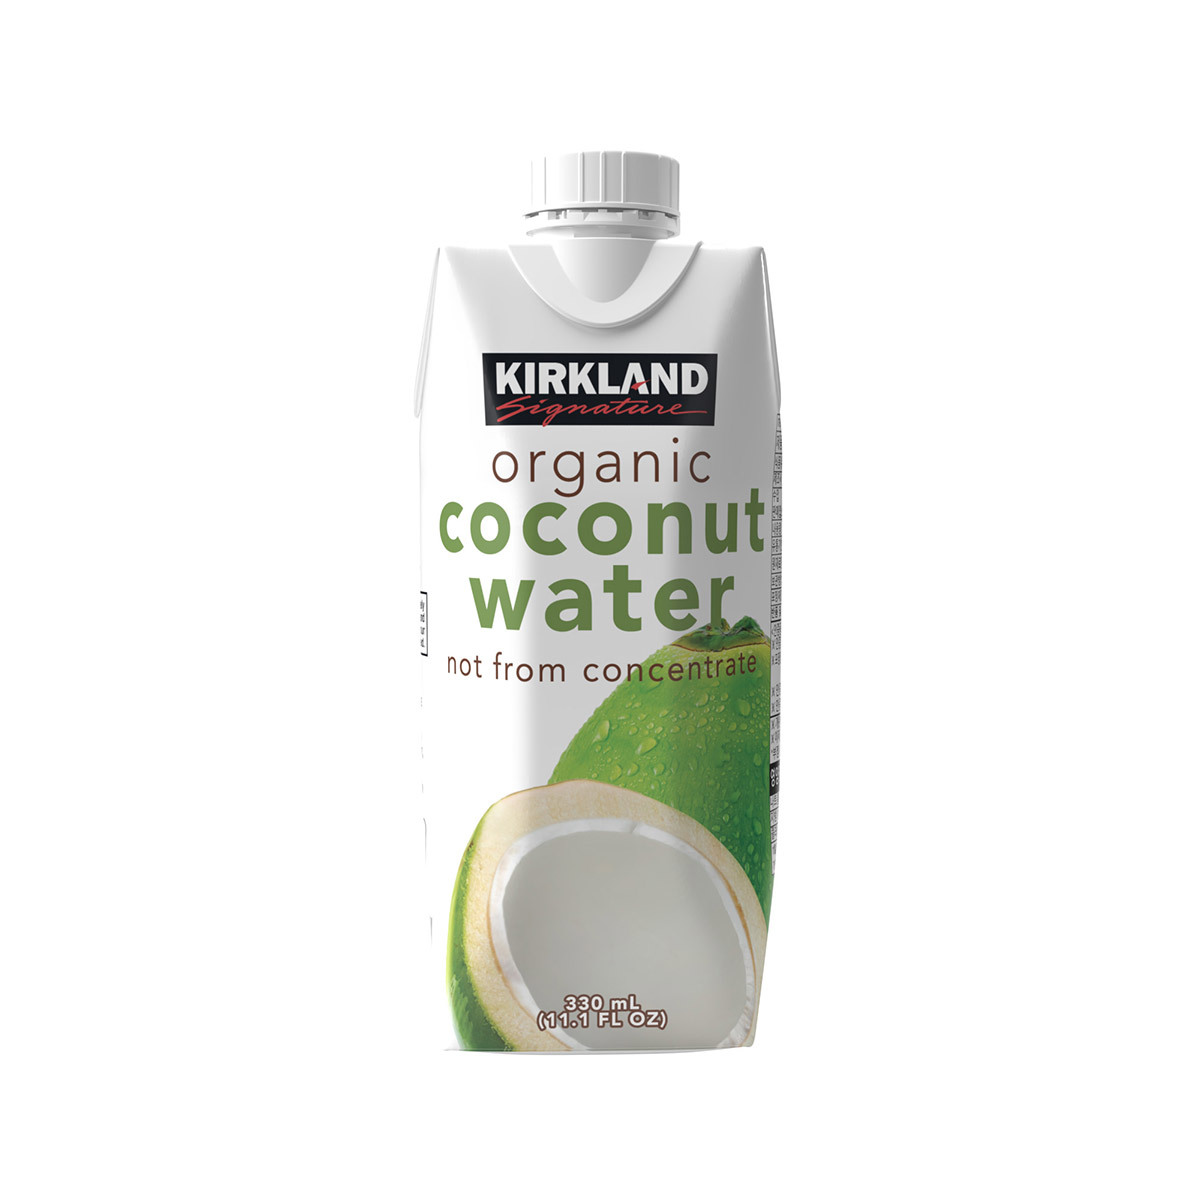 코코넛 워터의 이점 및 조언 :: Costco Kirkland Organic Coconut Drink